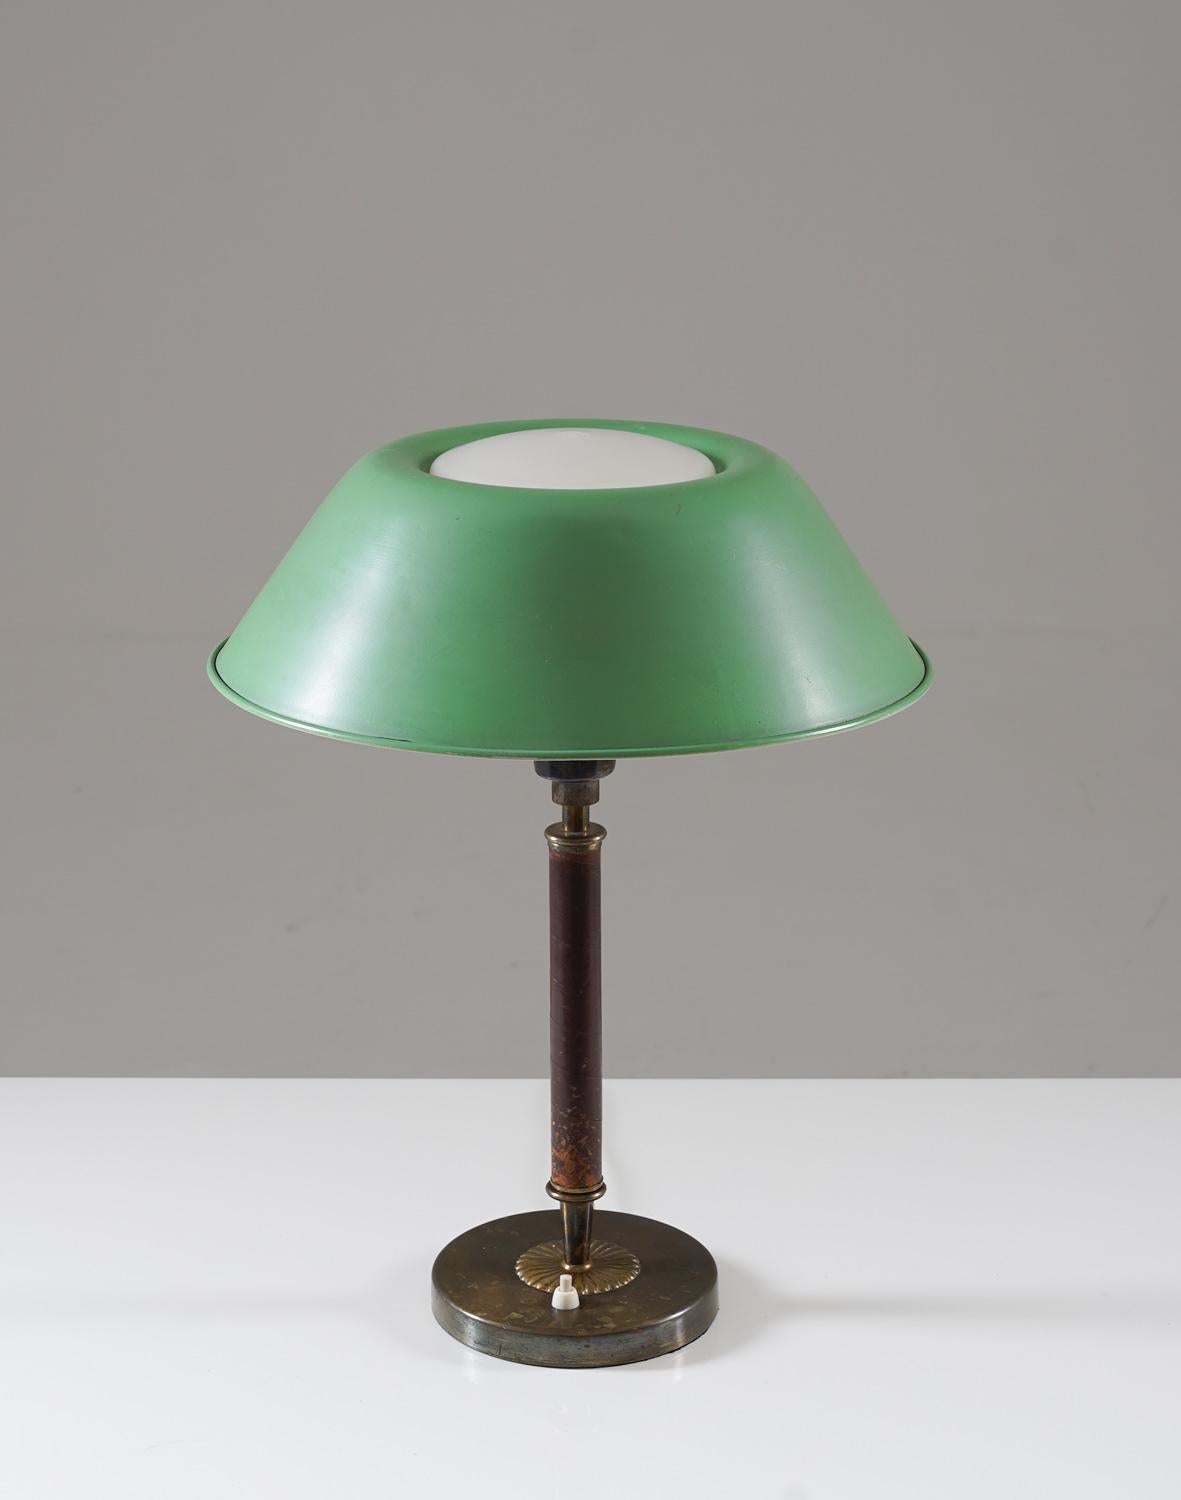 Rare lampe de table en laiton, cuir, verre et métal, très probablement fabriquée en Suède, dans les années 1930.
Cette lampe élégante a été fabriquée pendant l'ère moderne suédoise et est de très haute qualité. Il se compose d'un lourd pied en